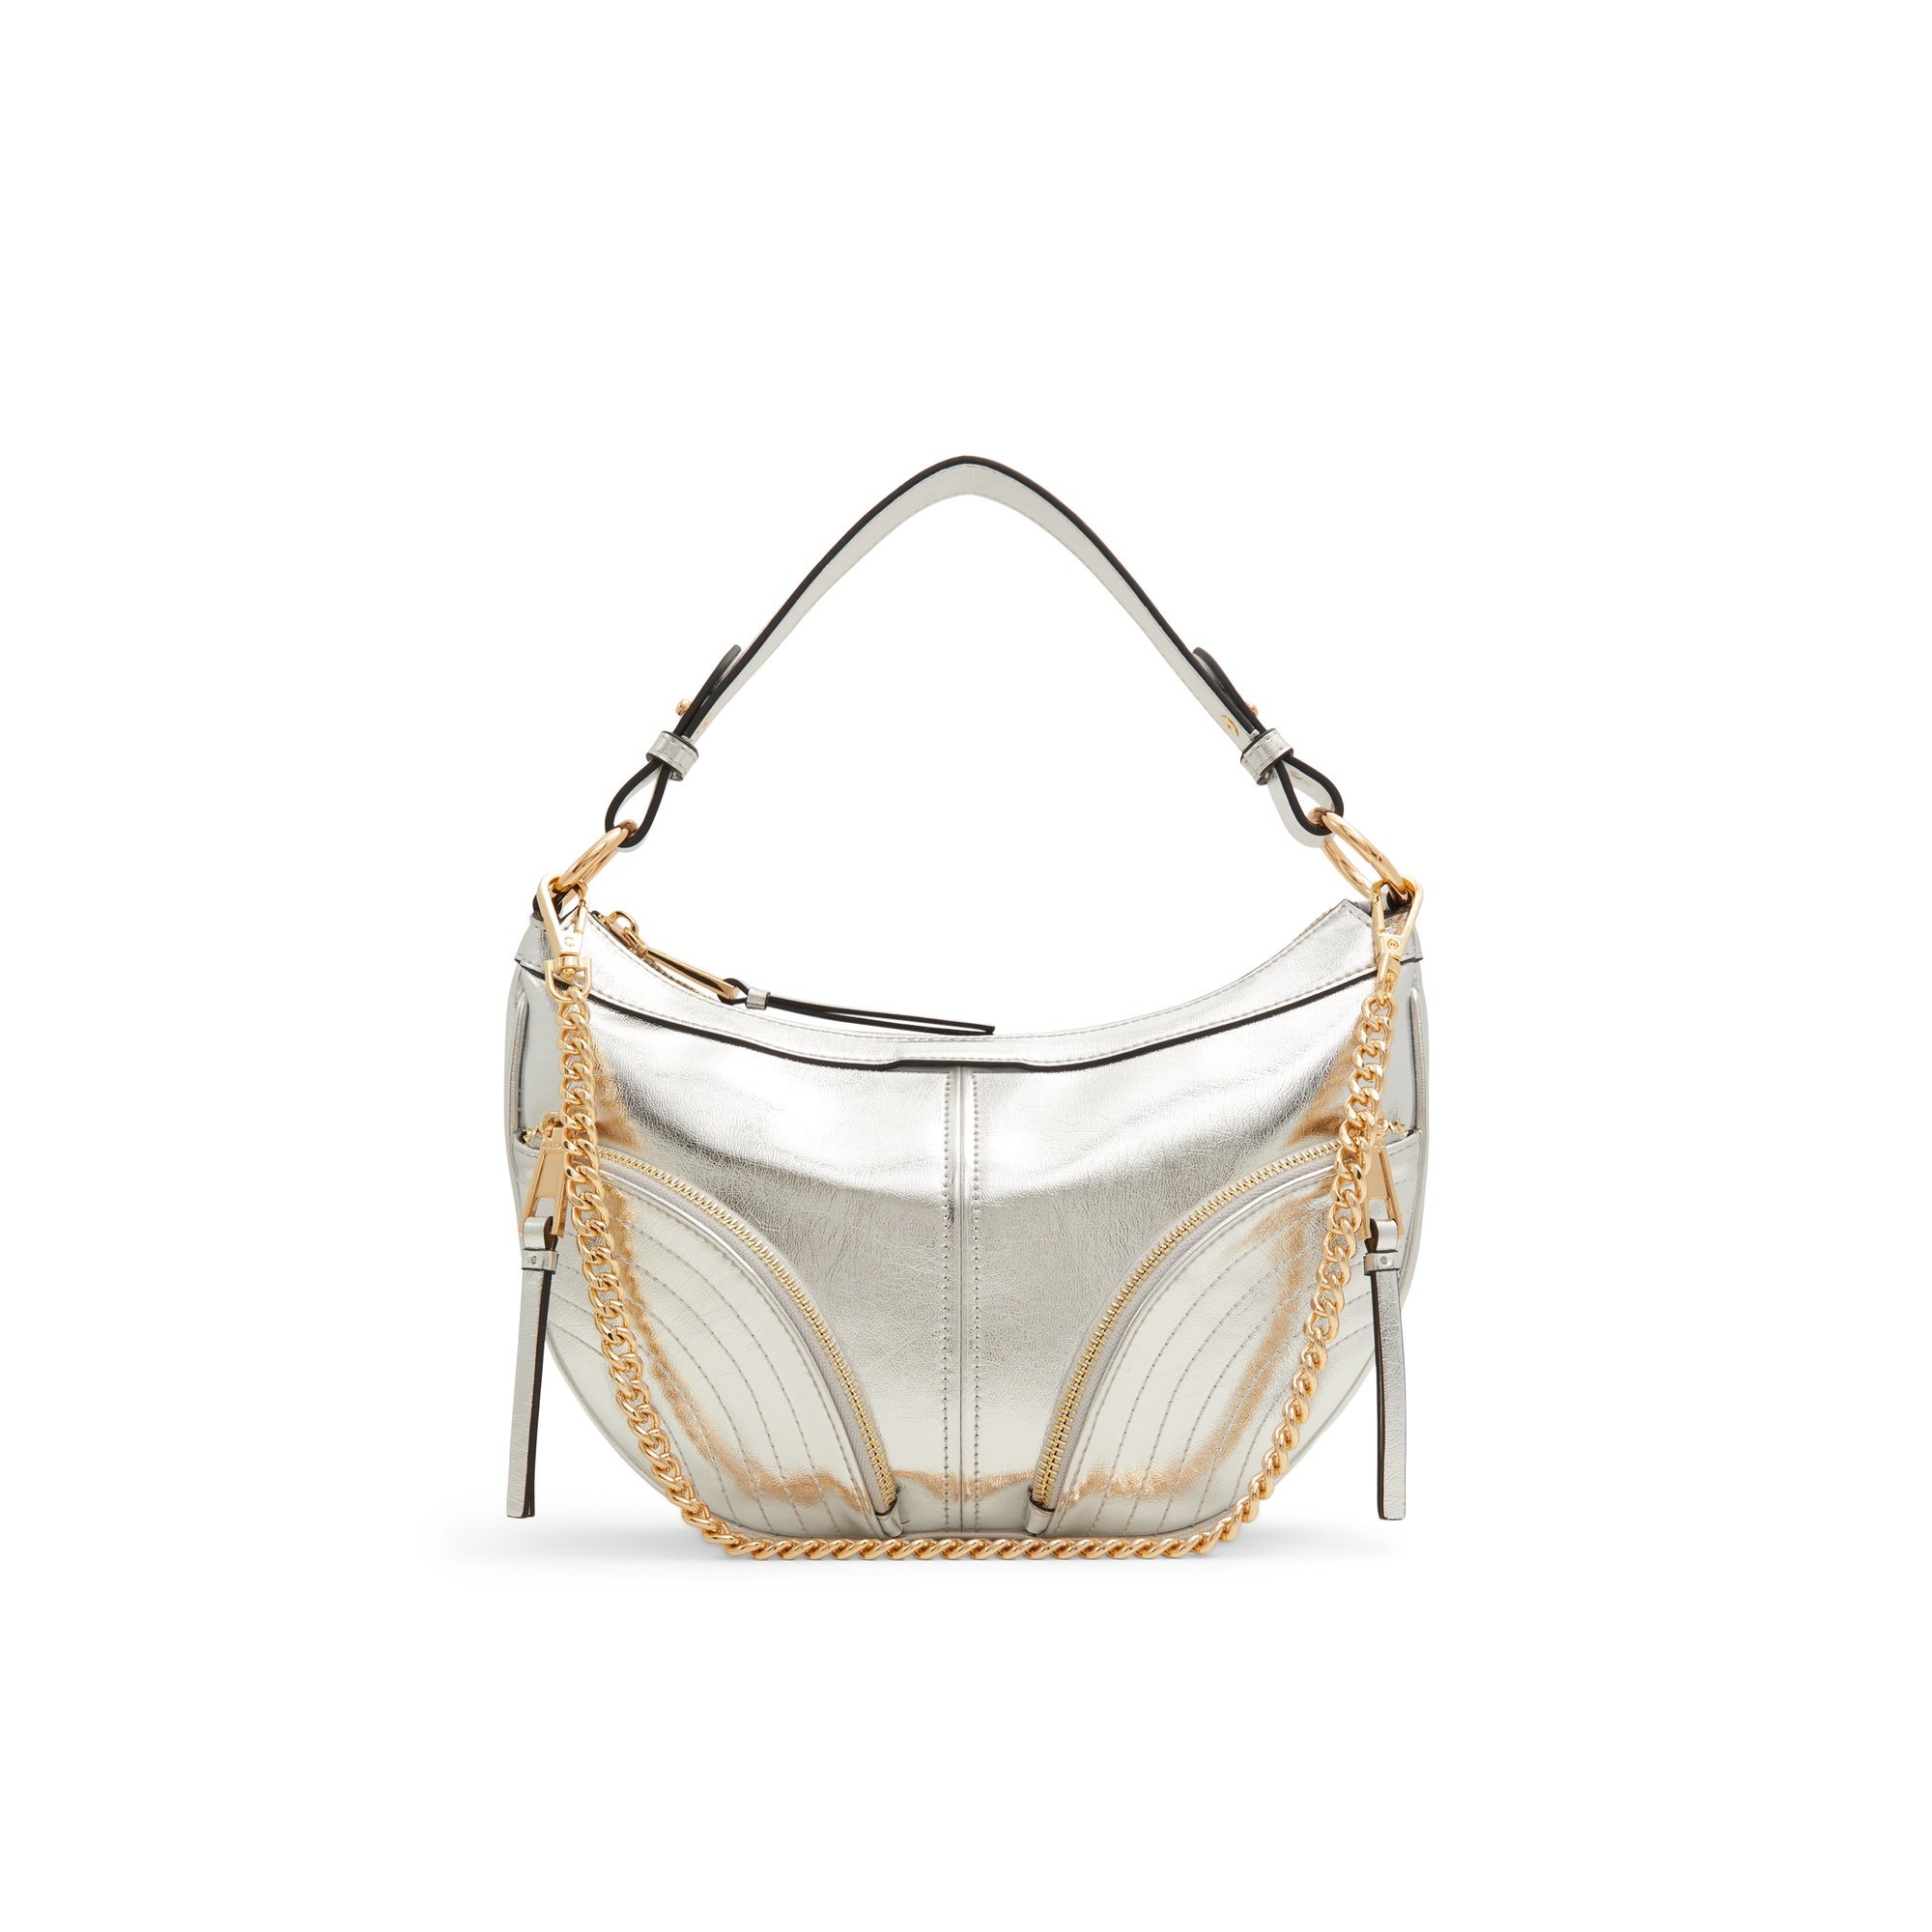 ALDO Beranyx - Women's Handbags Shoulder Bags - Silver